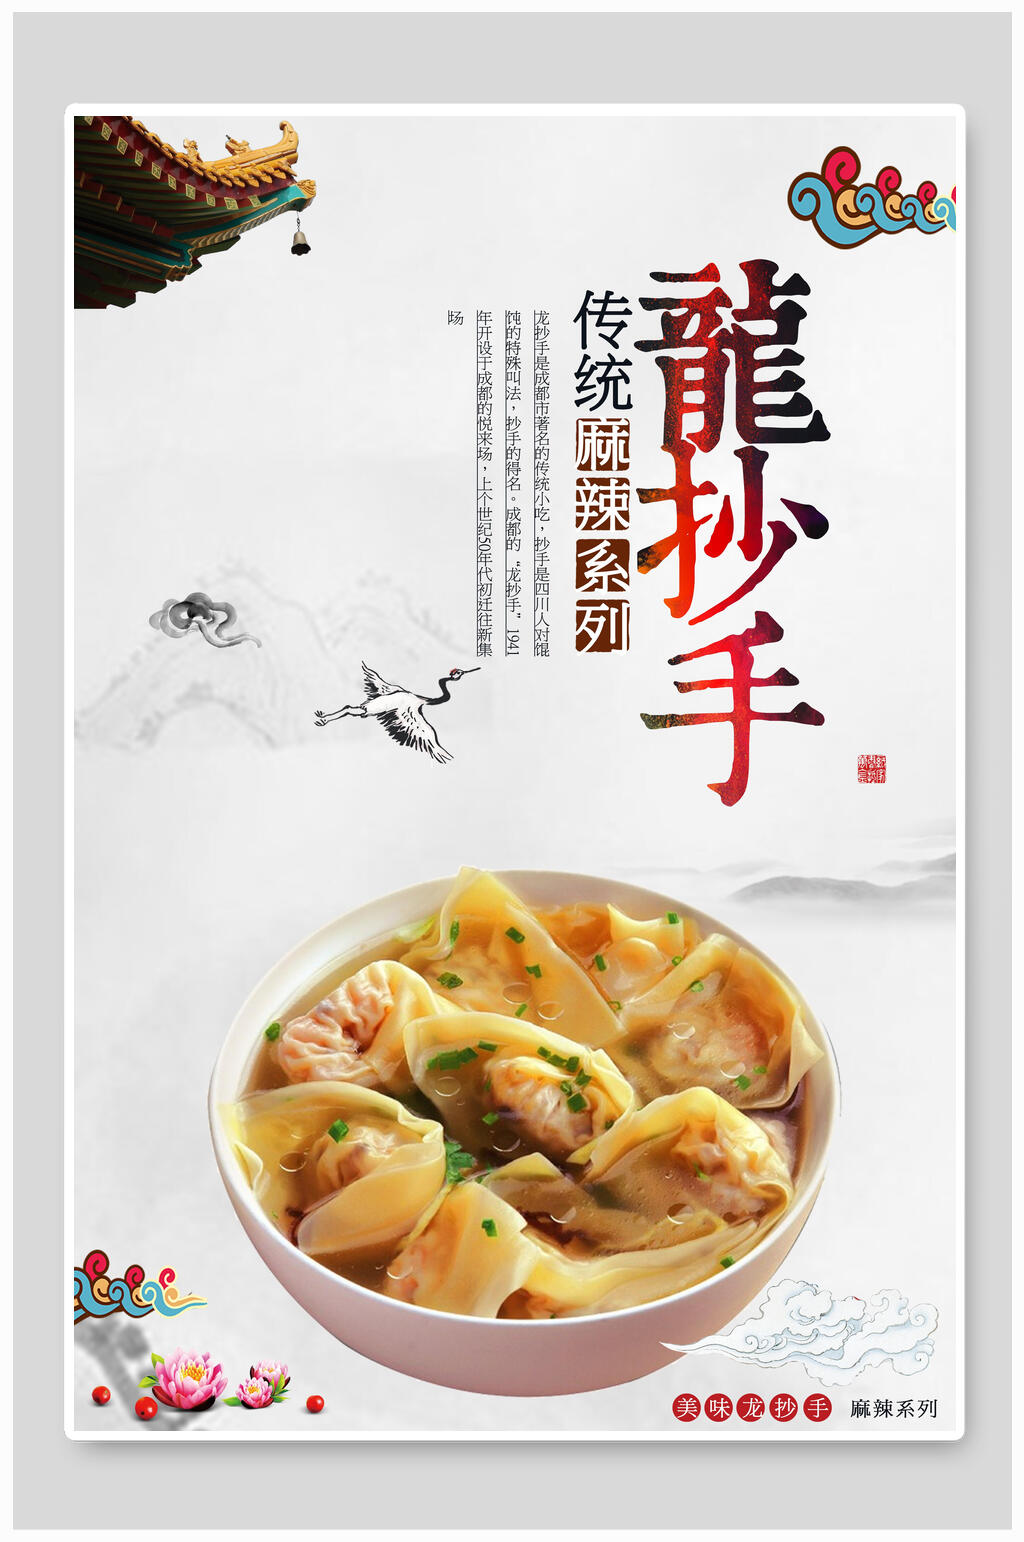 云吞馄饨抄手海报素材免费下载,本作品是由江小南上传的原创平面广告